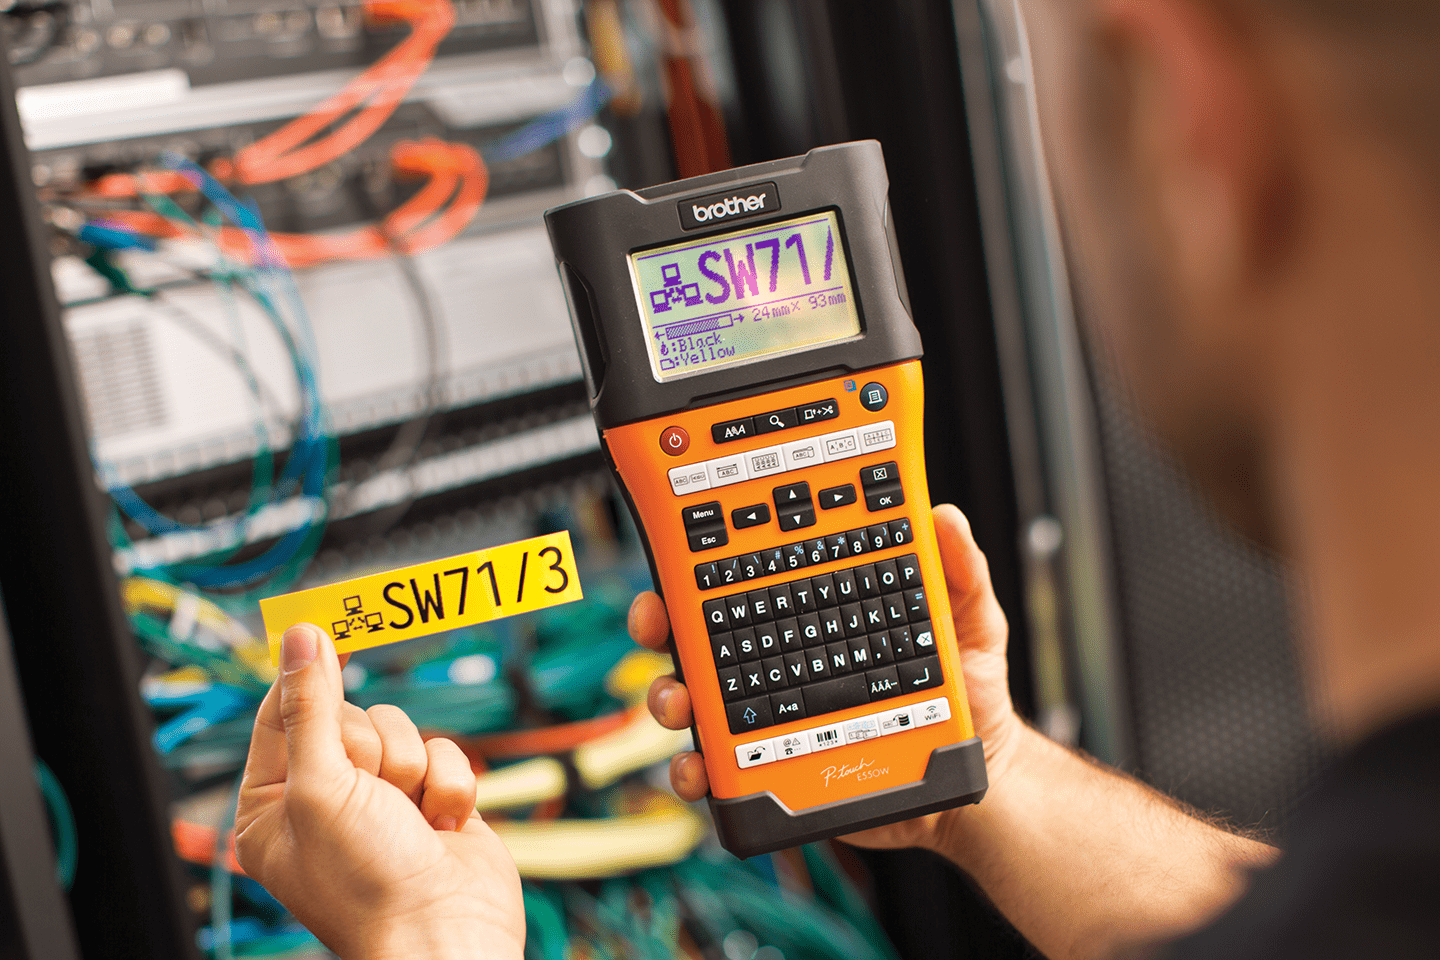 PT-E550WNIVP - labelprinter-pakke til identifikation af netværksinfrastruktur og kabler 4